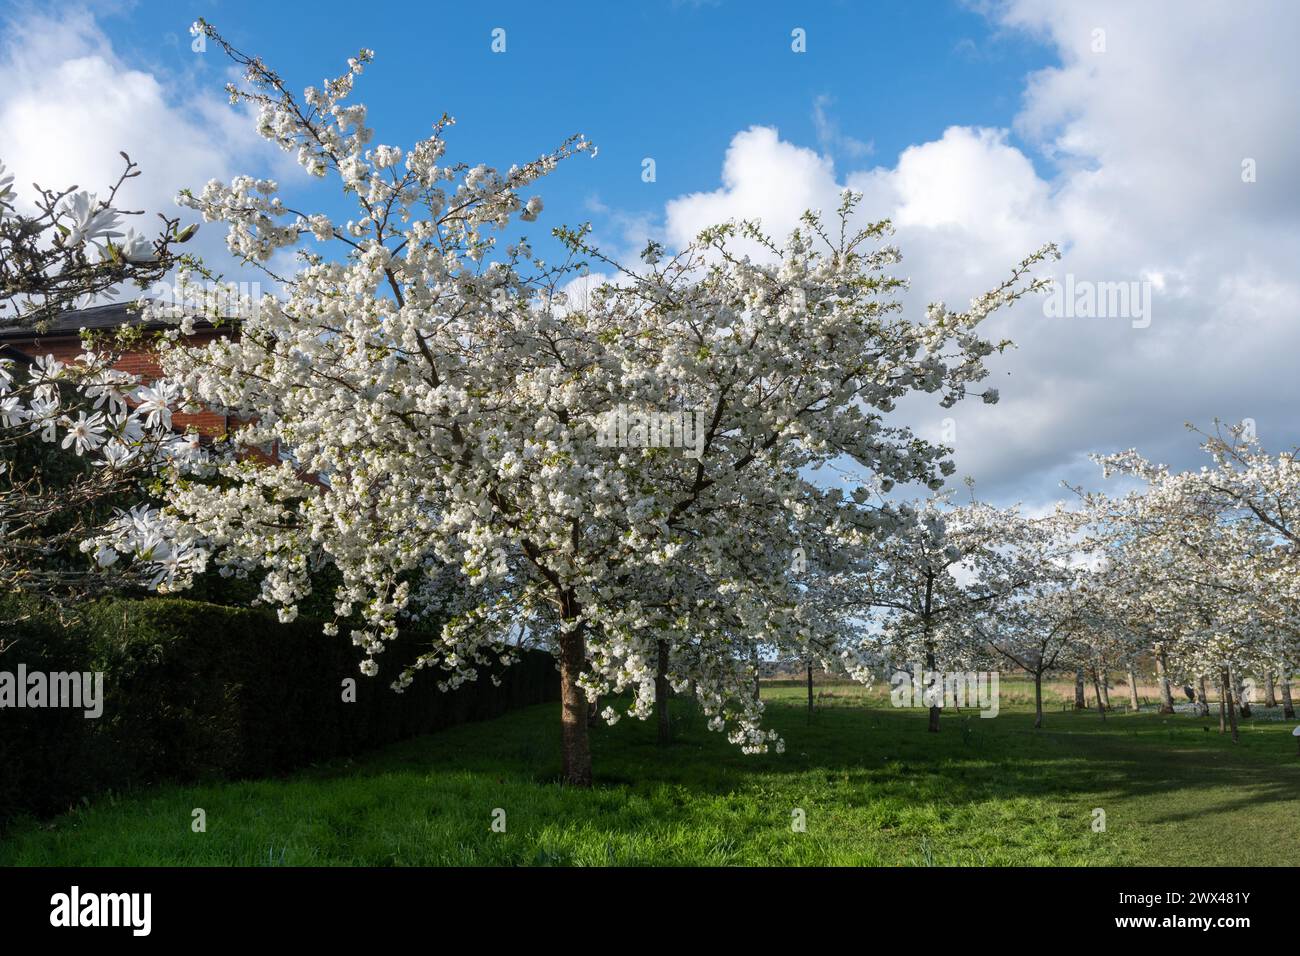 Cerisiers blancs en fleurs au printemps ou en mars au Mottisfont Country Estate dans le Hampshire, Angleterre, Royaume-Uni Banque D'Images